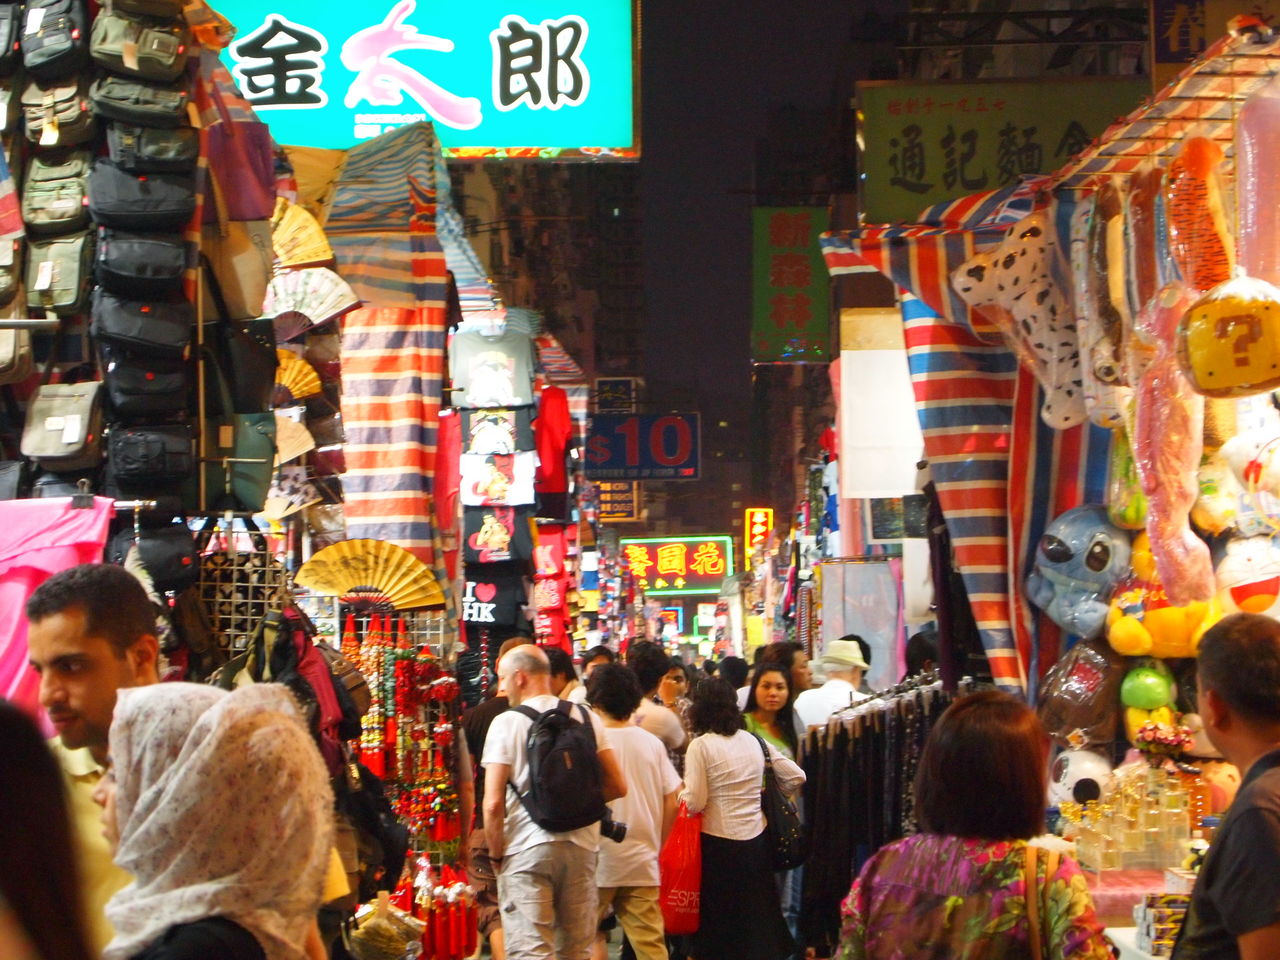 香港女人街の夜景 写真素材 [ 7155704 ] - フォトライブラリー photolibrary